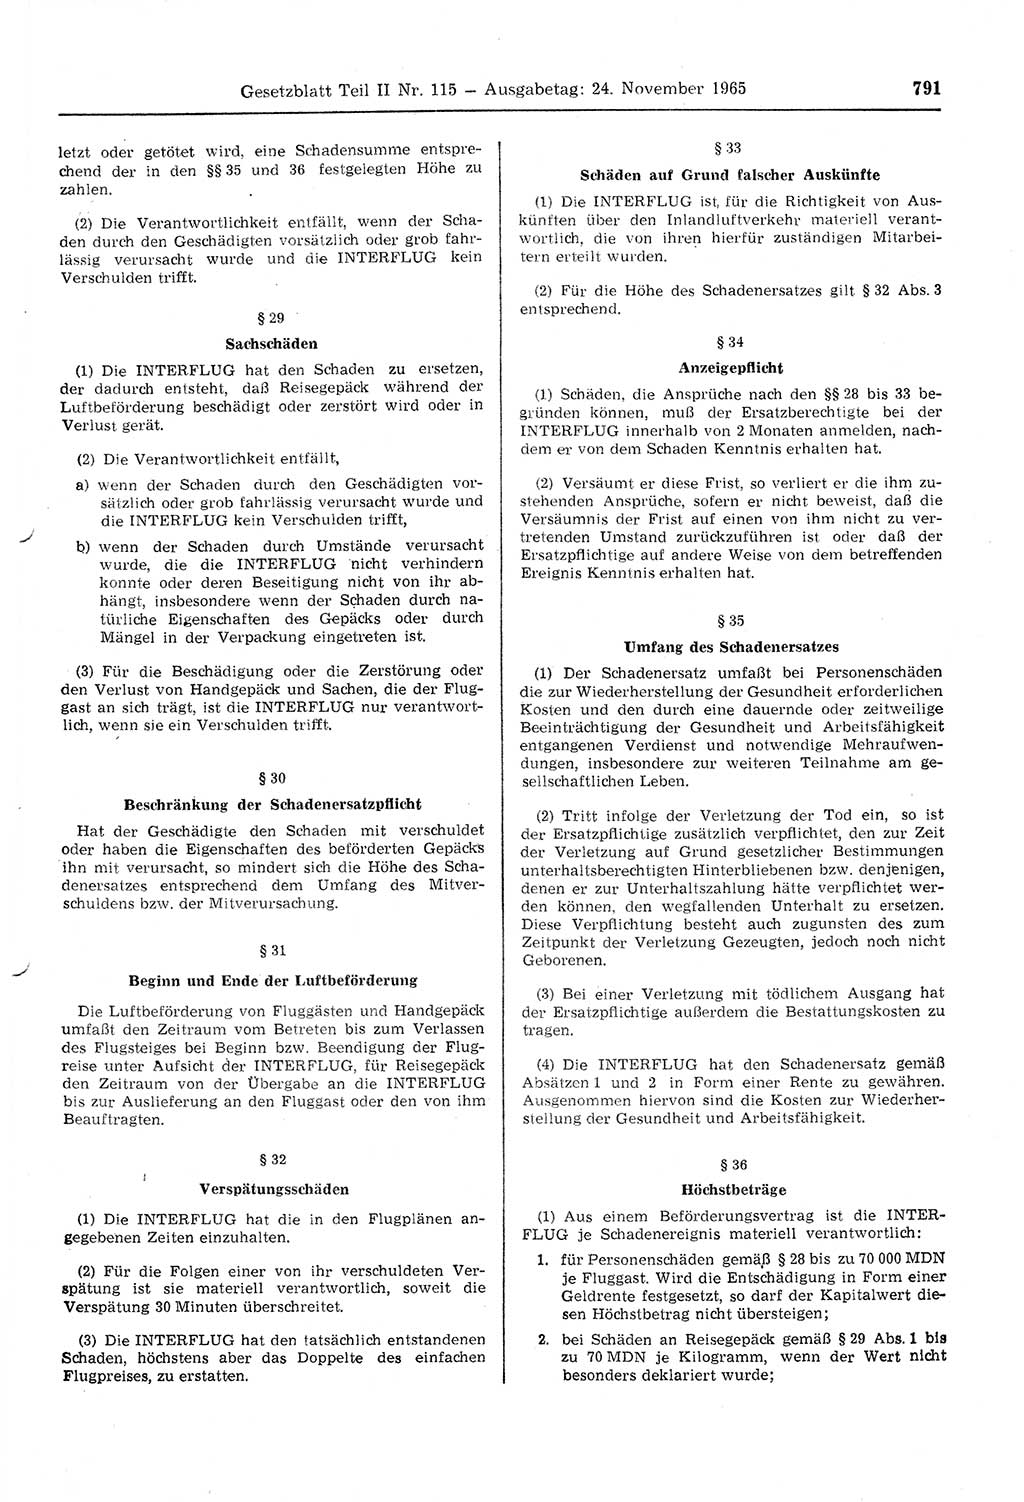 Gesetzblatt (GBl.) der Deutschen Demokratischen Republik (DDR) Teil ⅠⅠ 1965, Seite 791 (GBl. DDR ⅠⅠ 1965, S. 791)